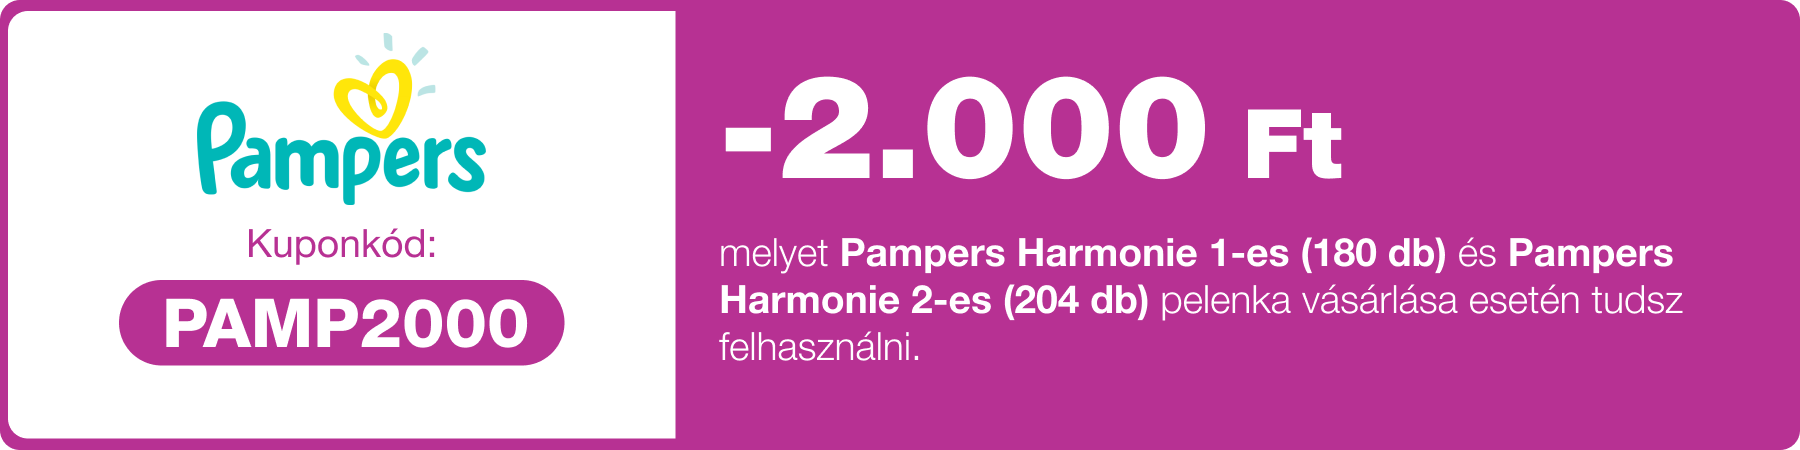 -2000 Ft kedvezmény Pampers Harmonie 1-es (180 db) és 2-es (204 db) pelenkákra.